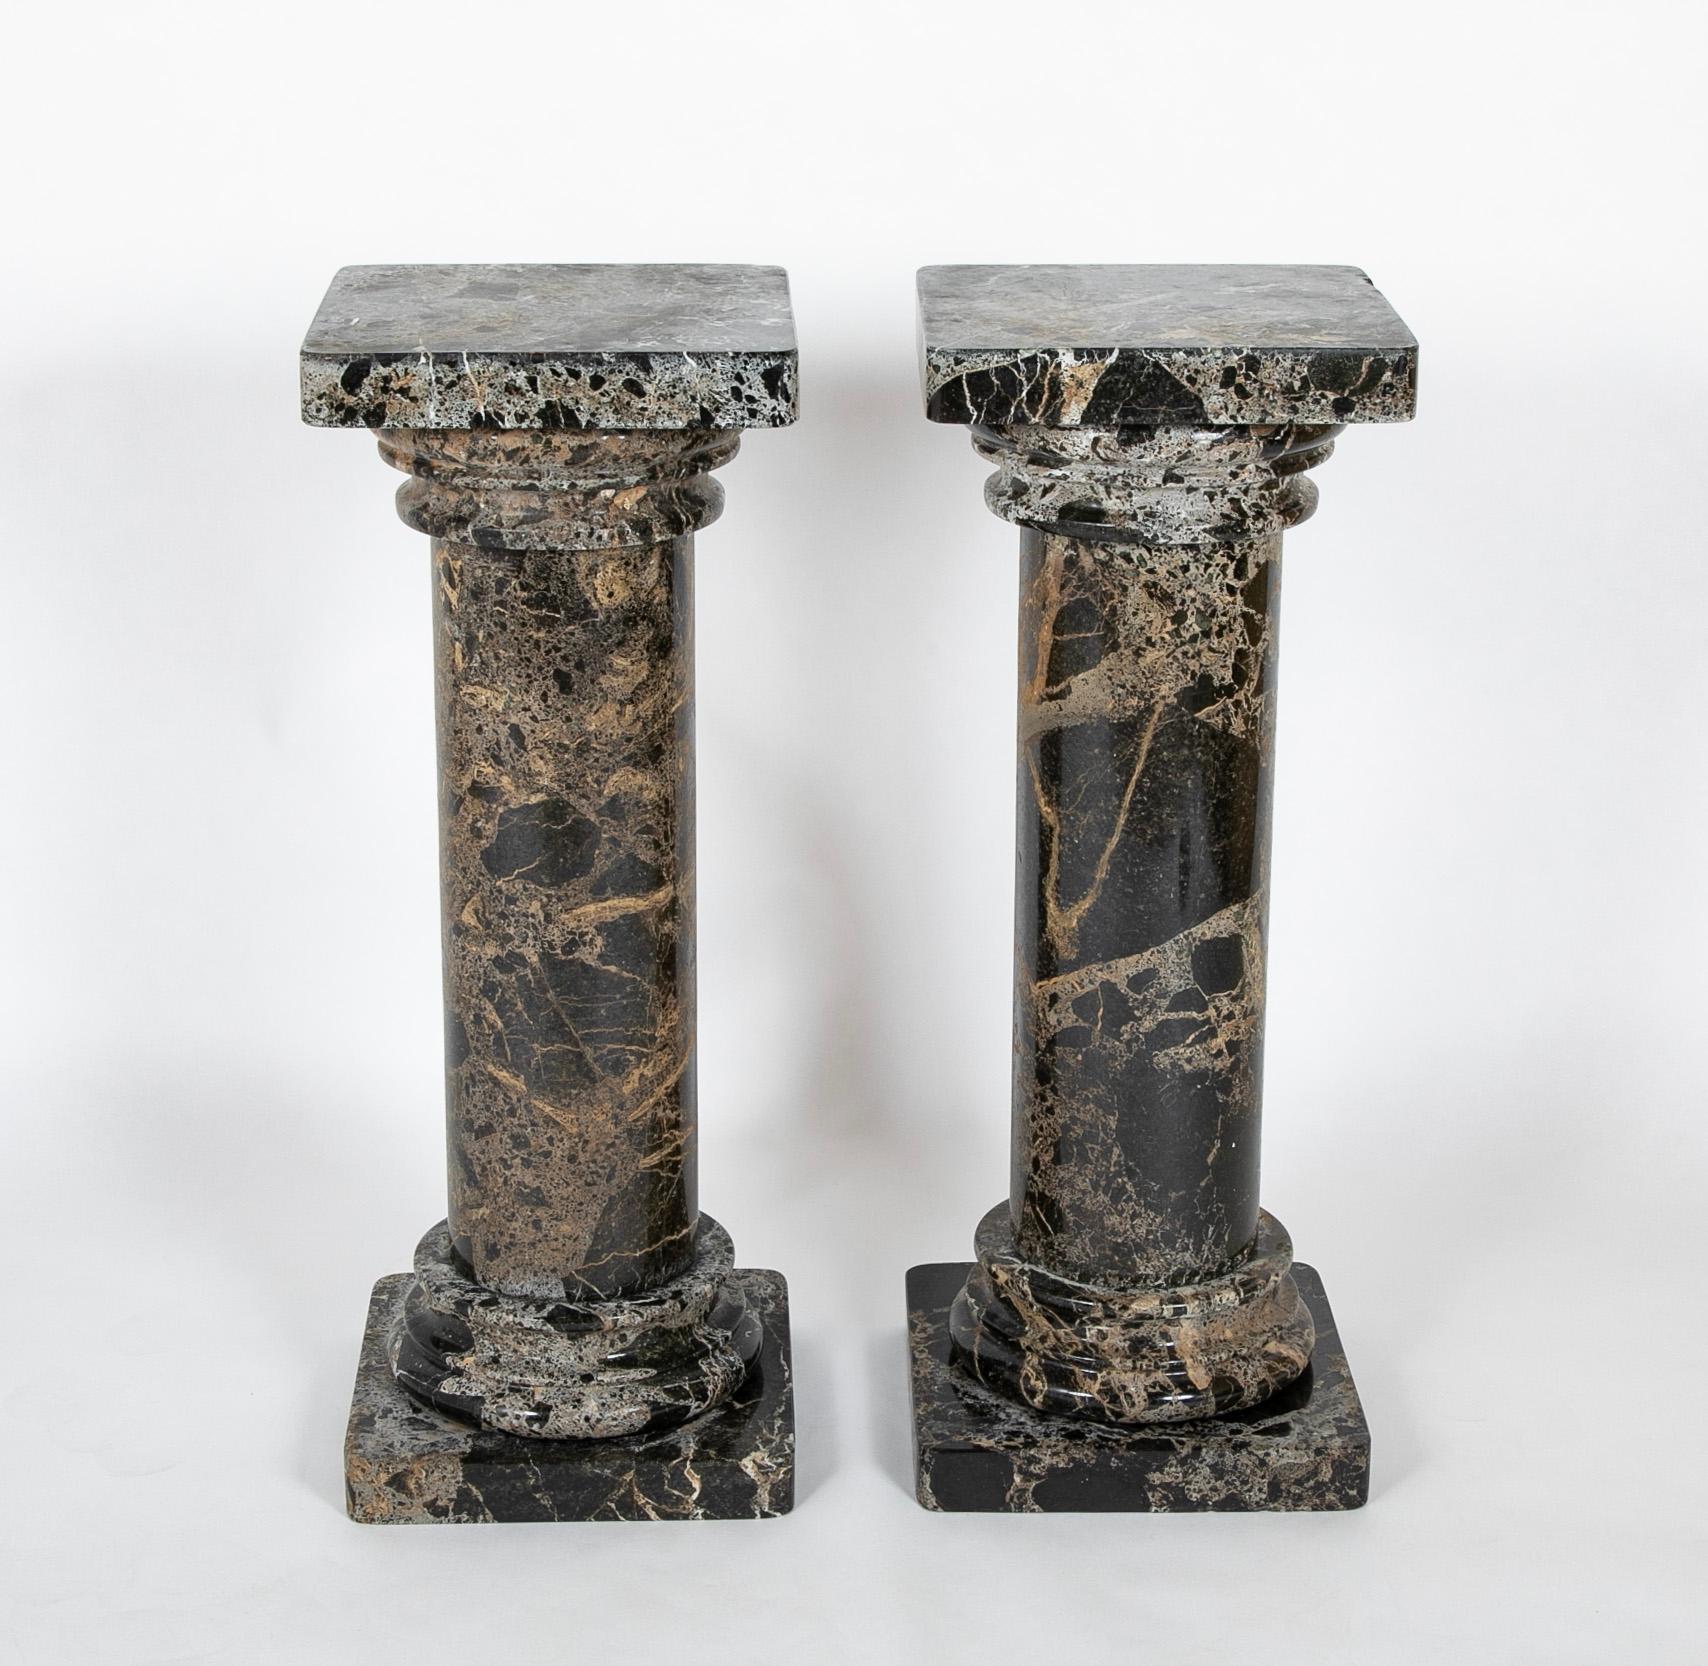 Paire de colonnes italiennes en marbre Breccia.  Début du 20e siècle.

36.24